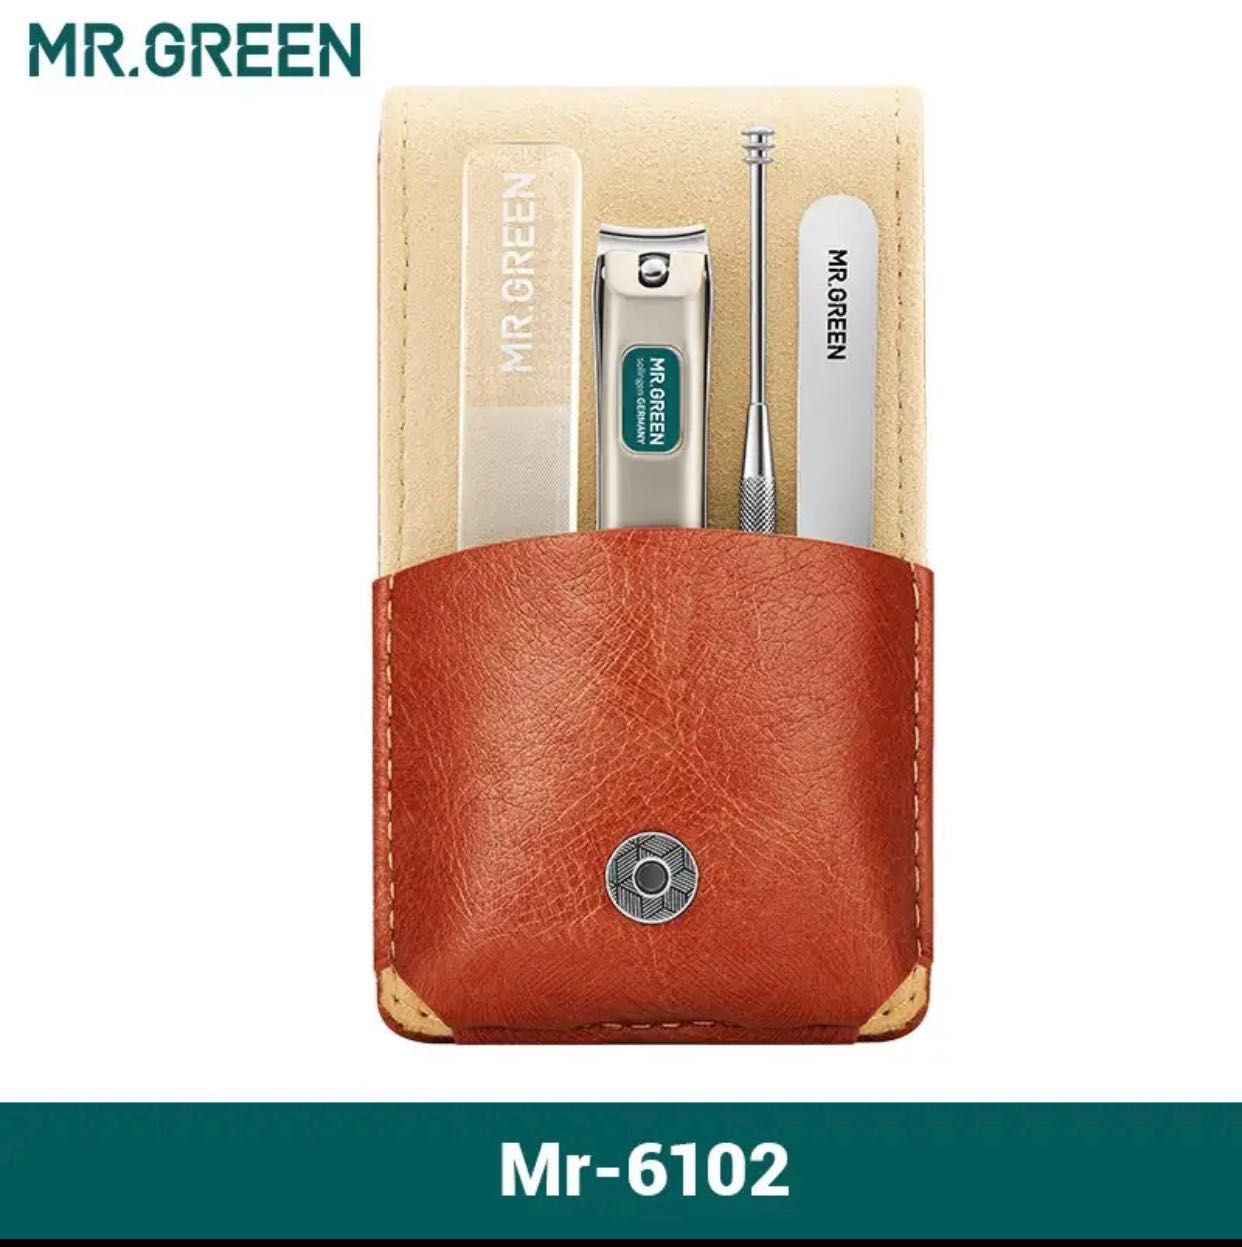 MR.GREEN Манікюрний набір 4 в 1 MR-6102. Подарунковий набір